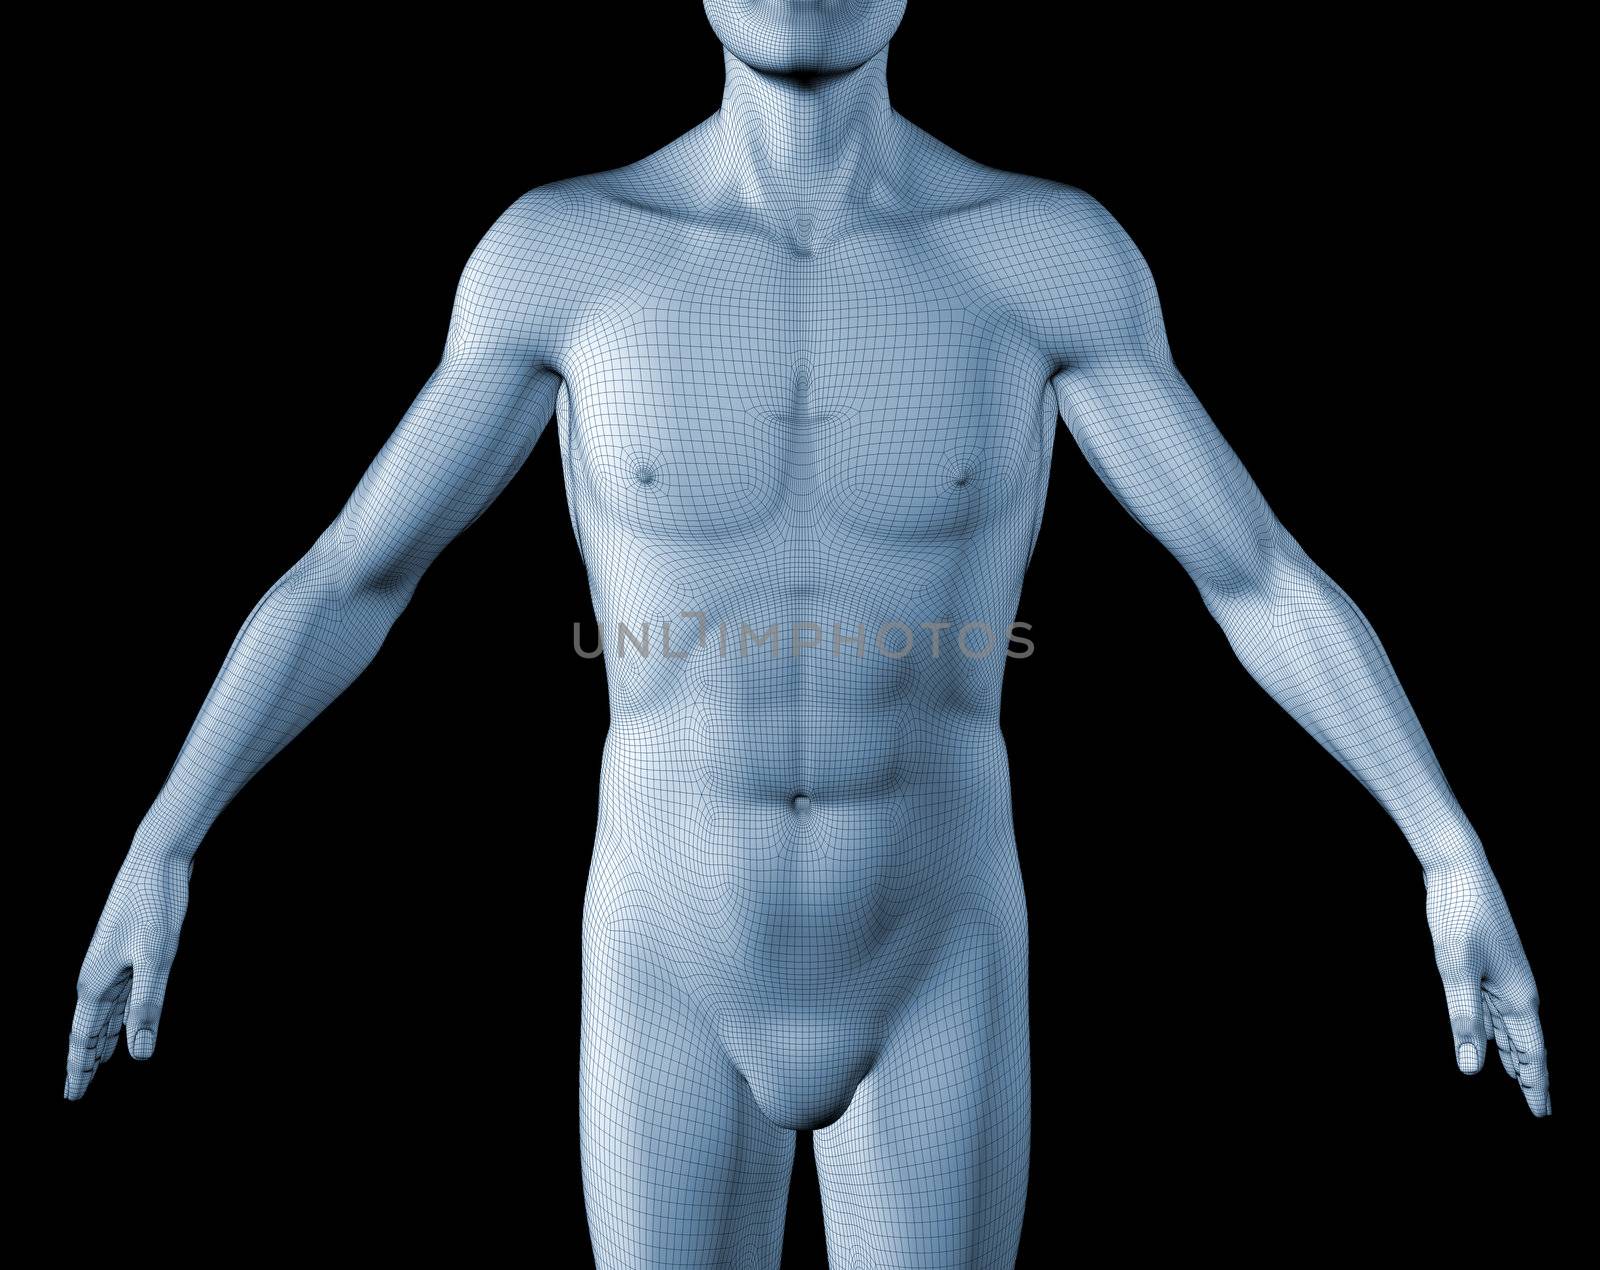 3d image of a man's torso